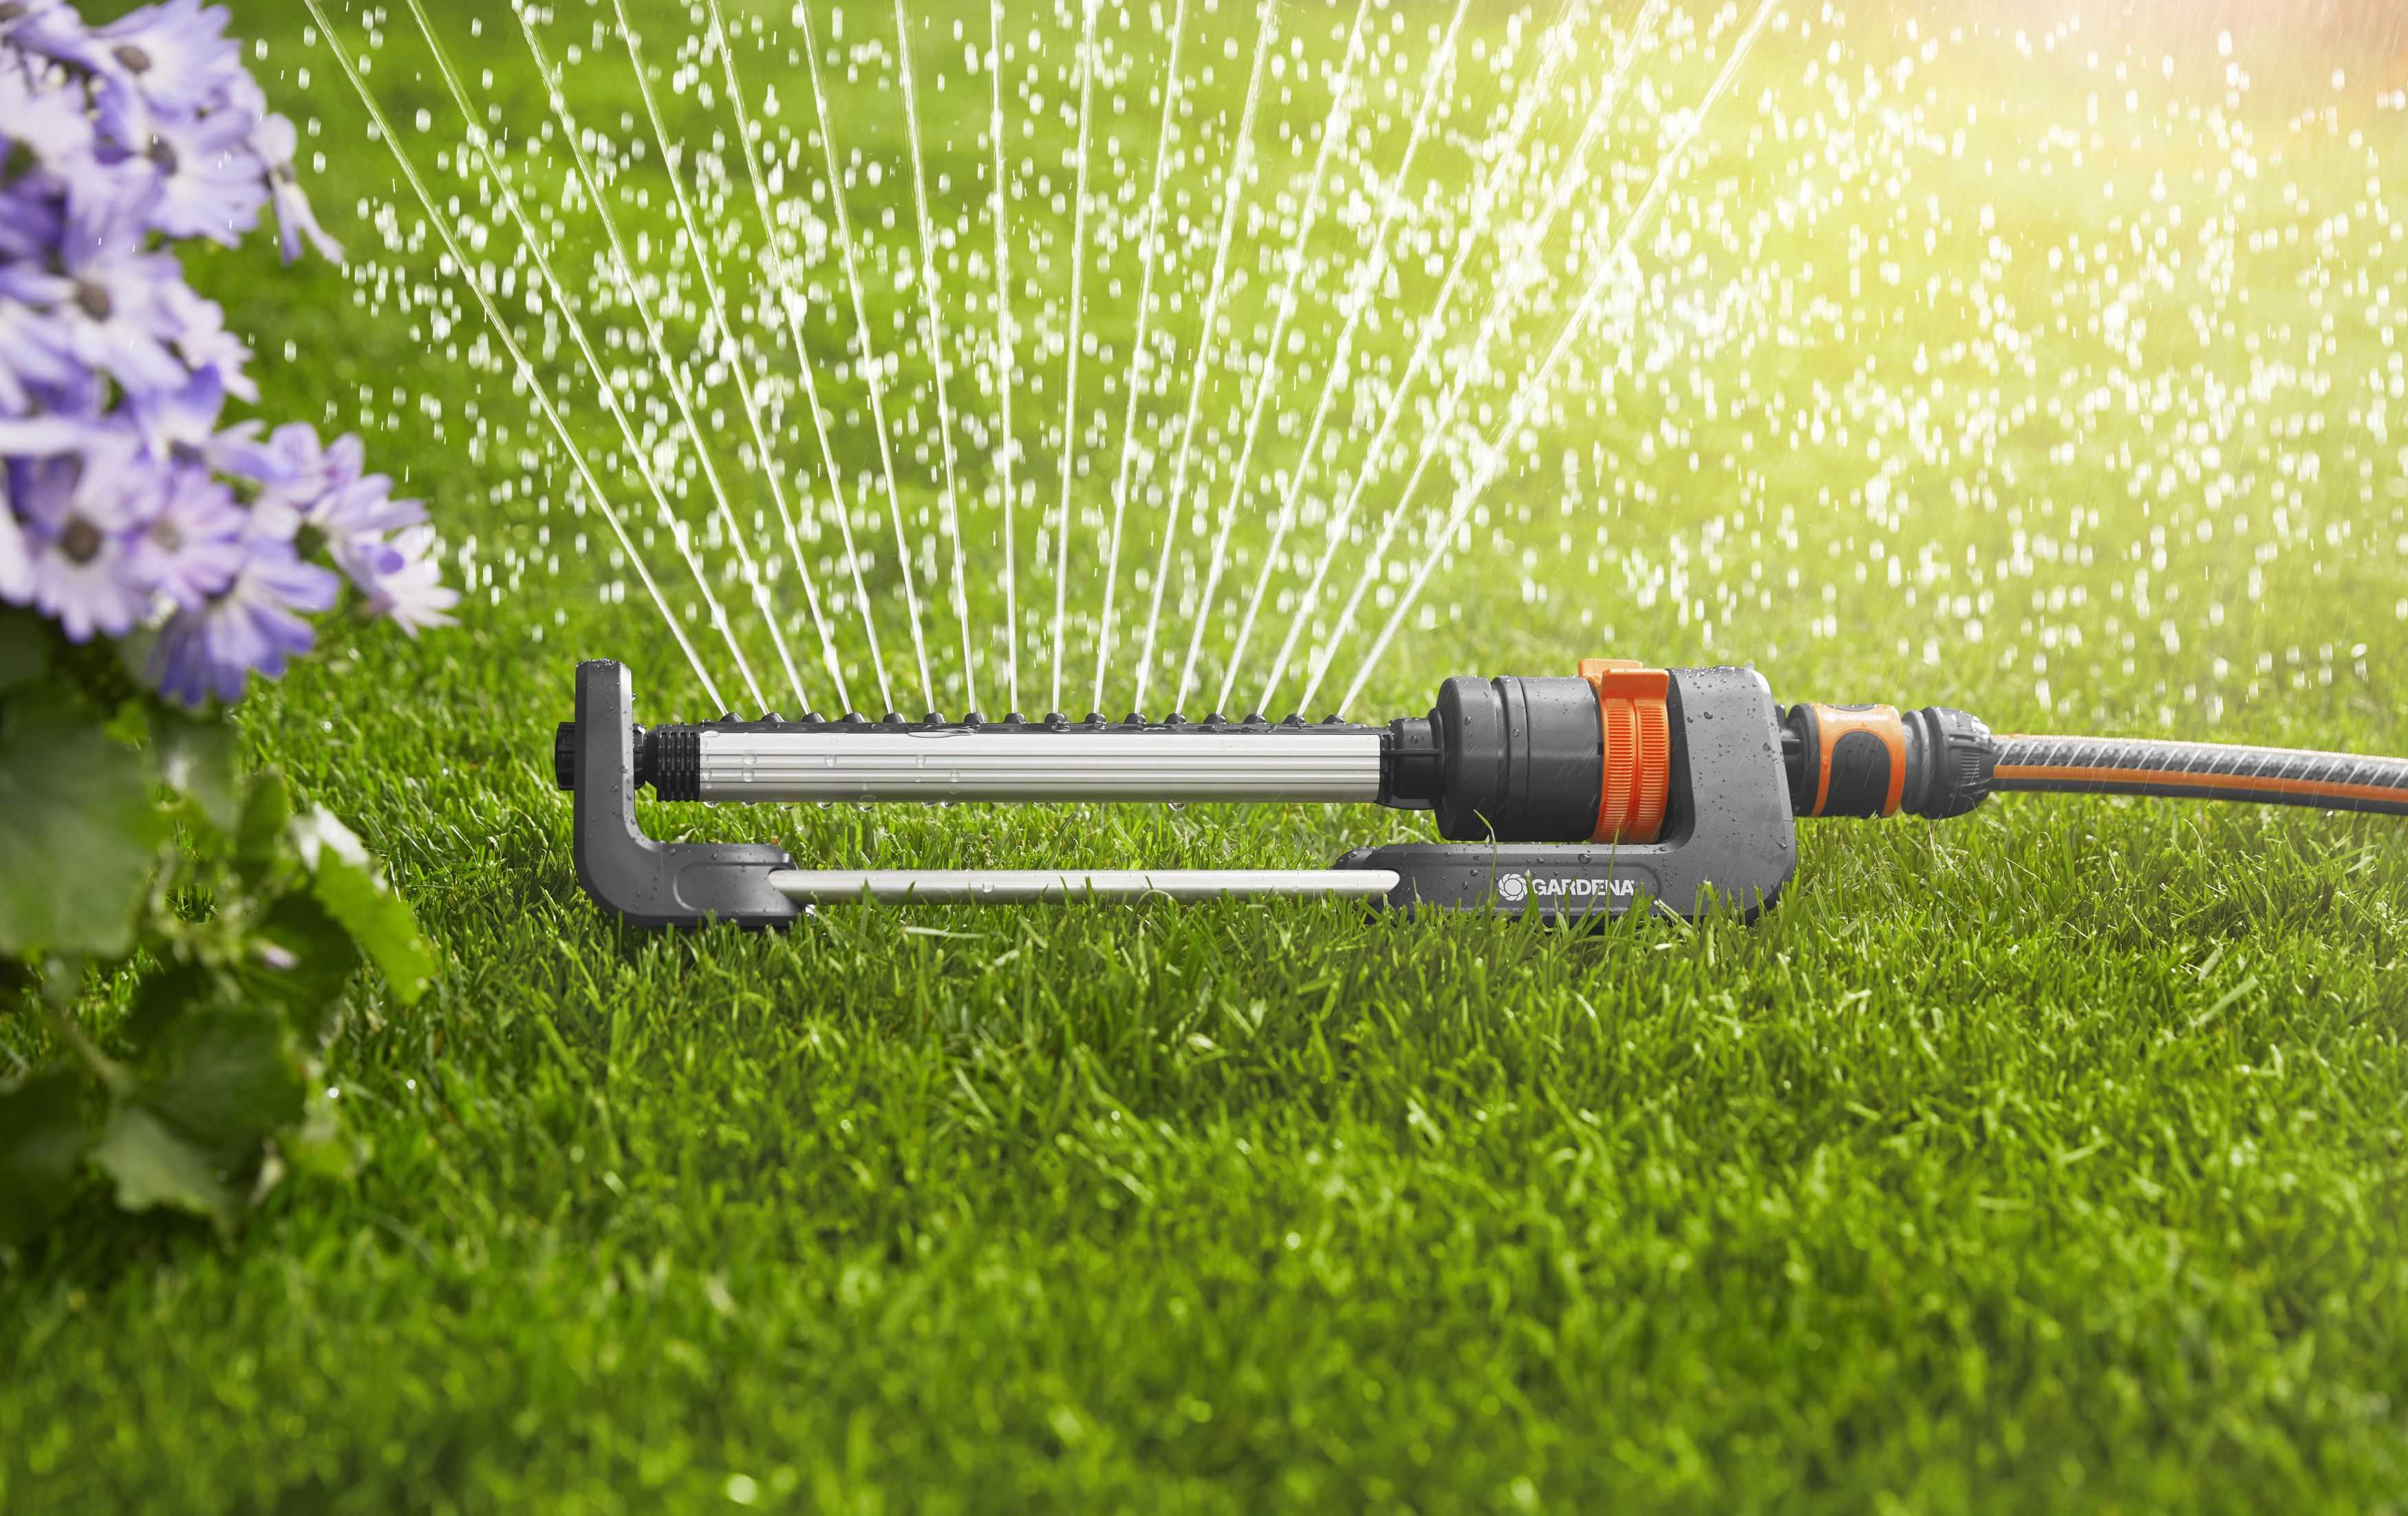 Топ-10 лучших дождевателей для полива: как подобрать устройство для ухода за газоном и огородом? | рейтинг +отзывы